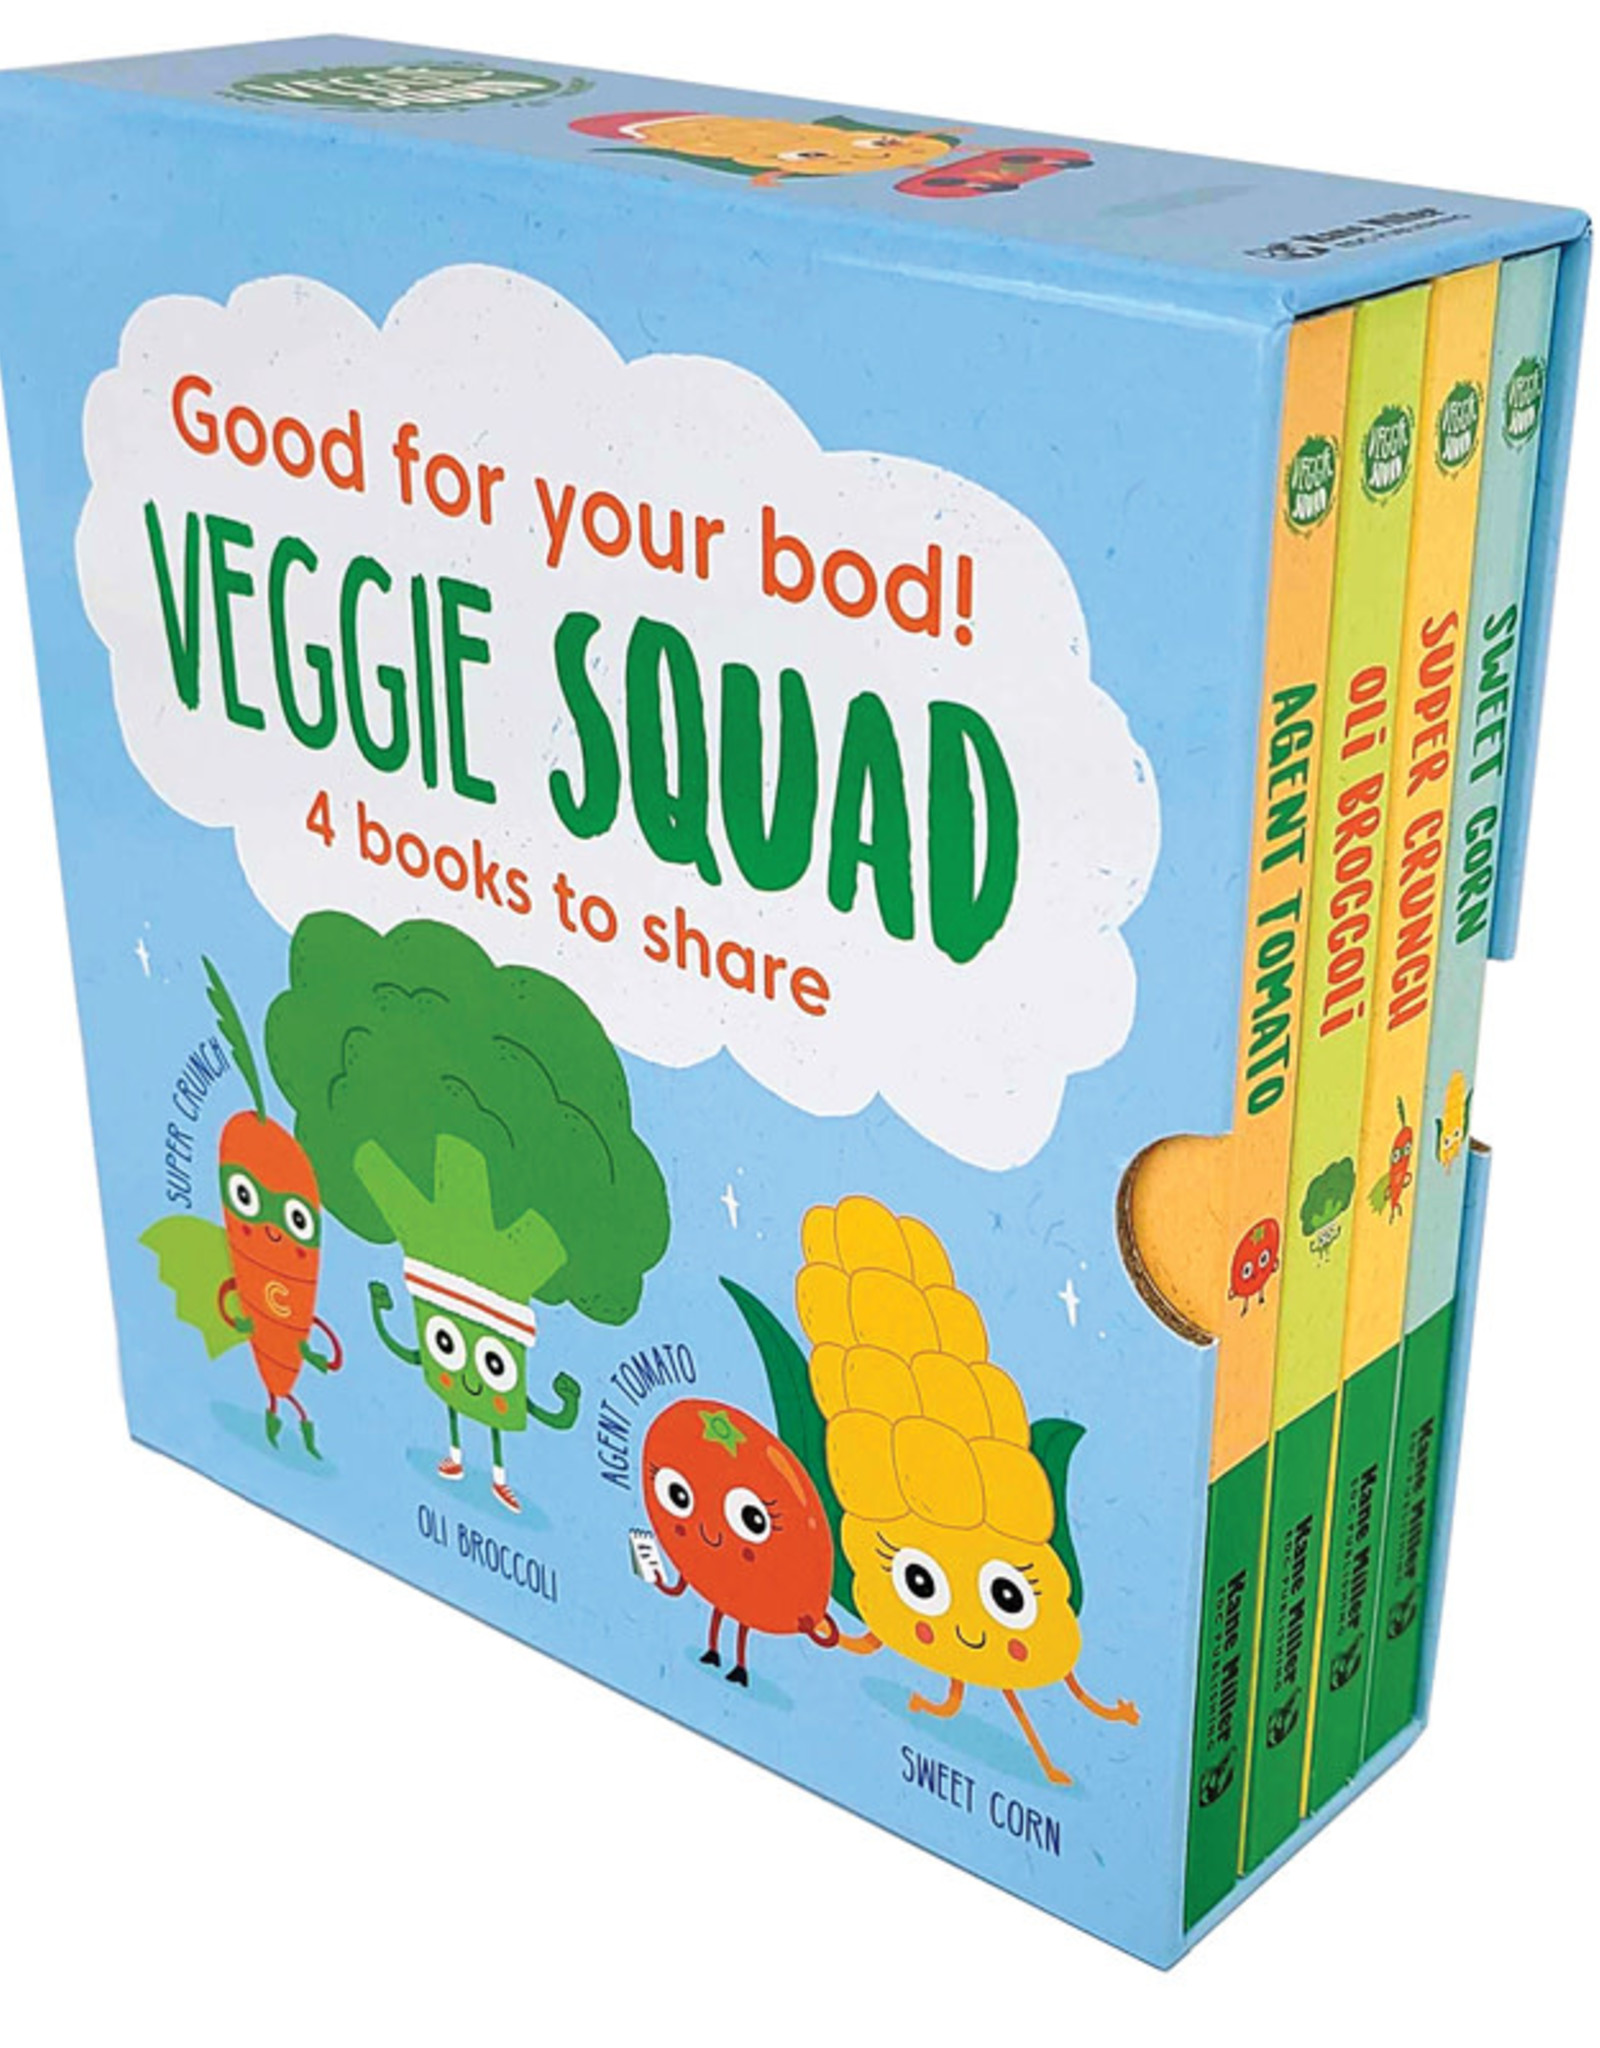 The Veggie Squad